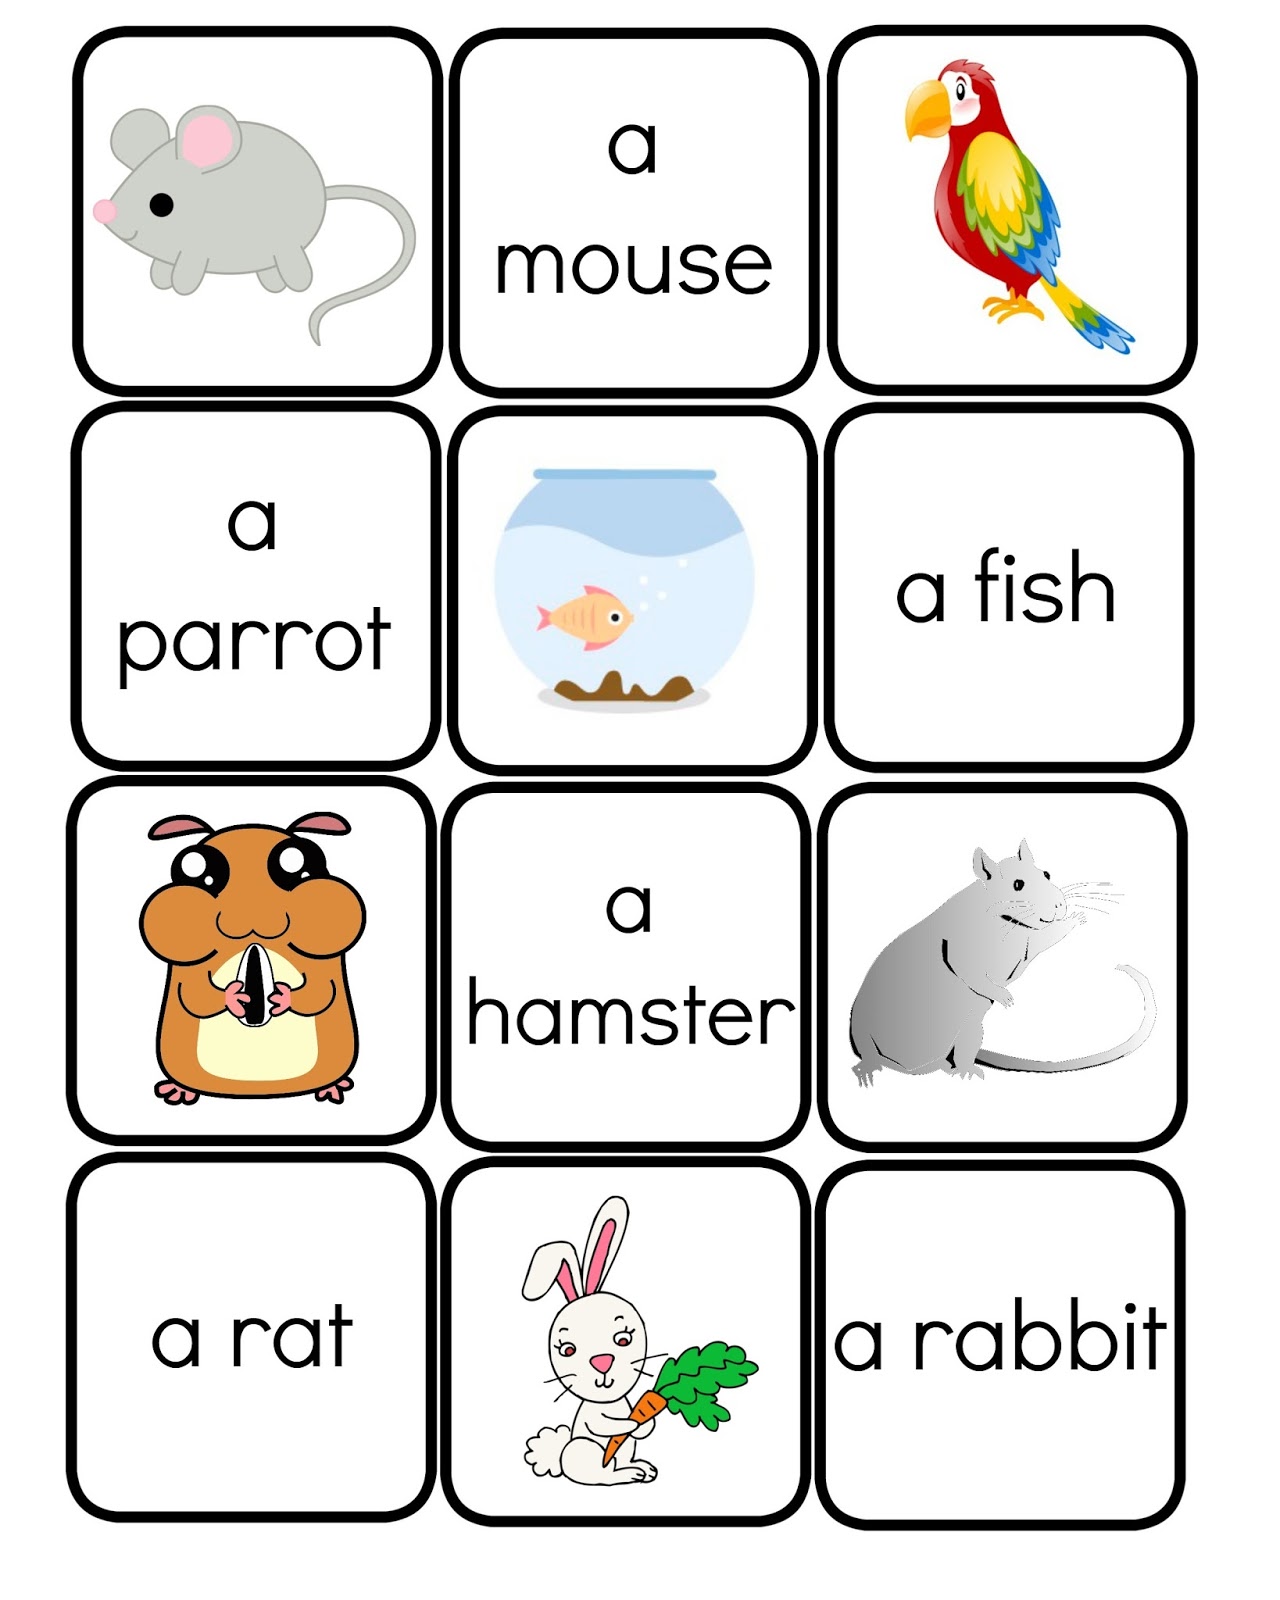 Английское слово pet. Карточки Pets для детей. My Pets Flashcards. Pets Memory game Cards. Pets Vocabulary for Kids.